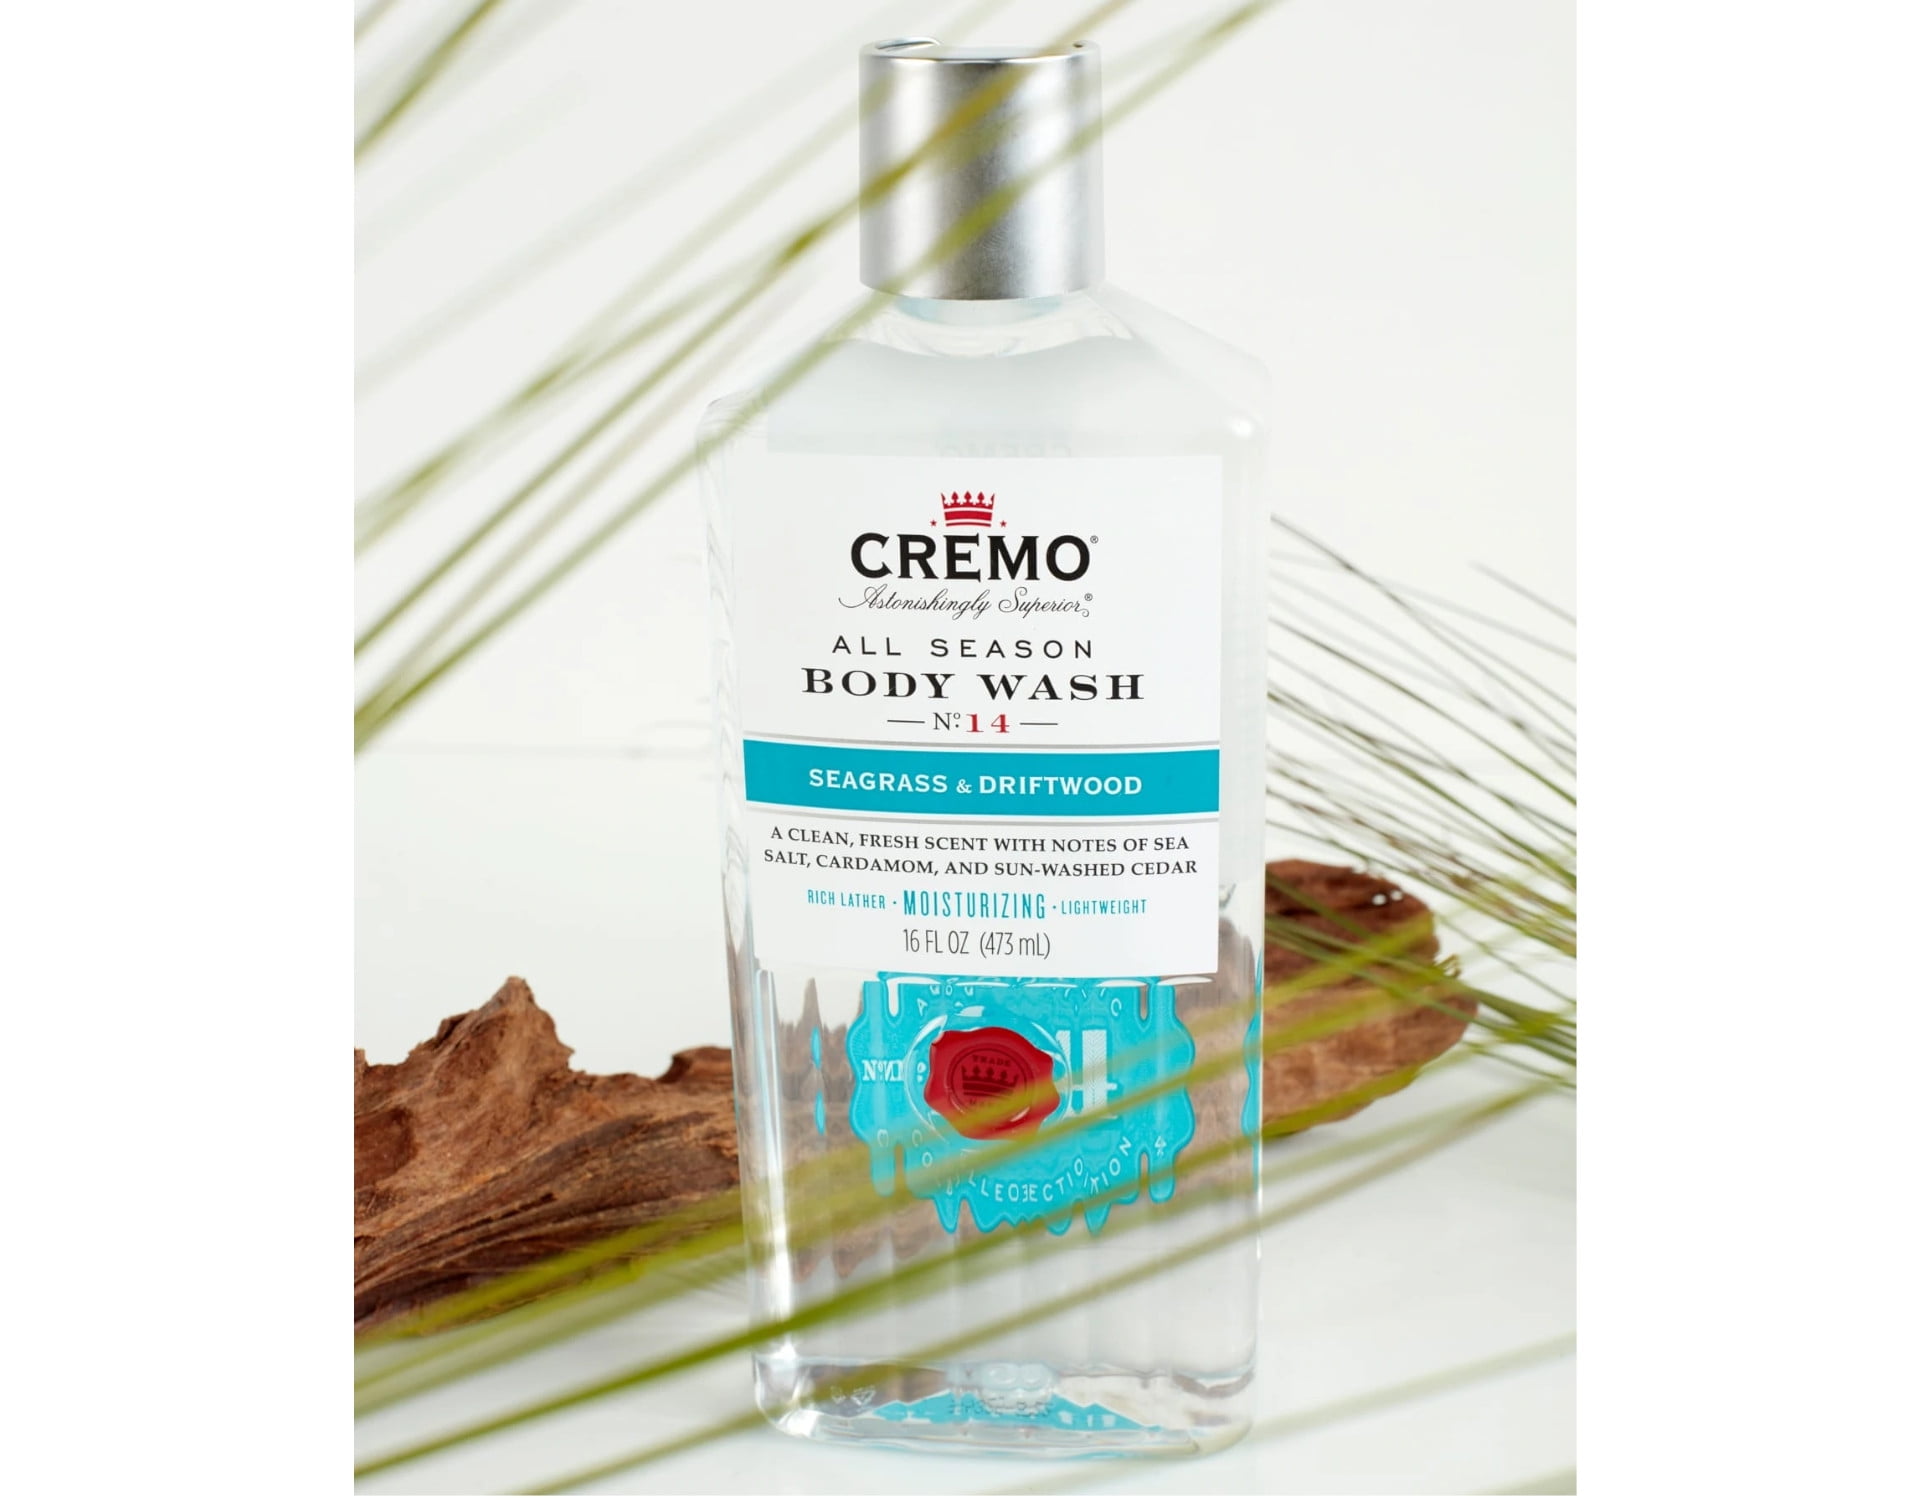 Cremo Body Wash, Silver Water & Birch, All Season, No. 10 - 16 fl oz